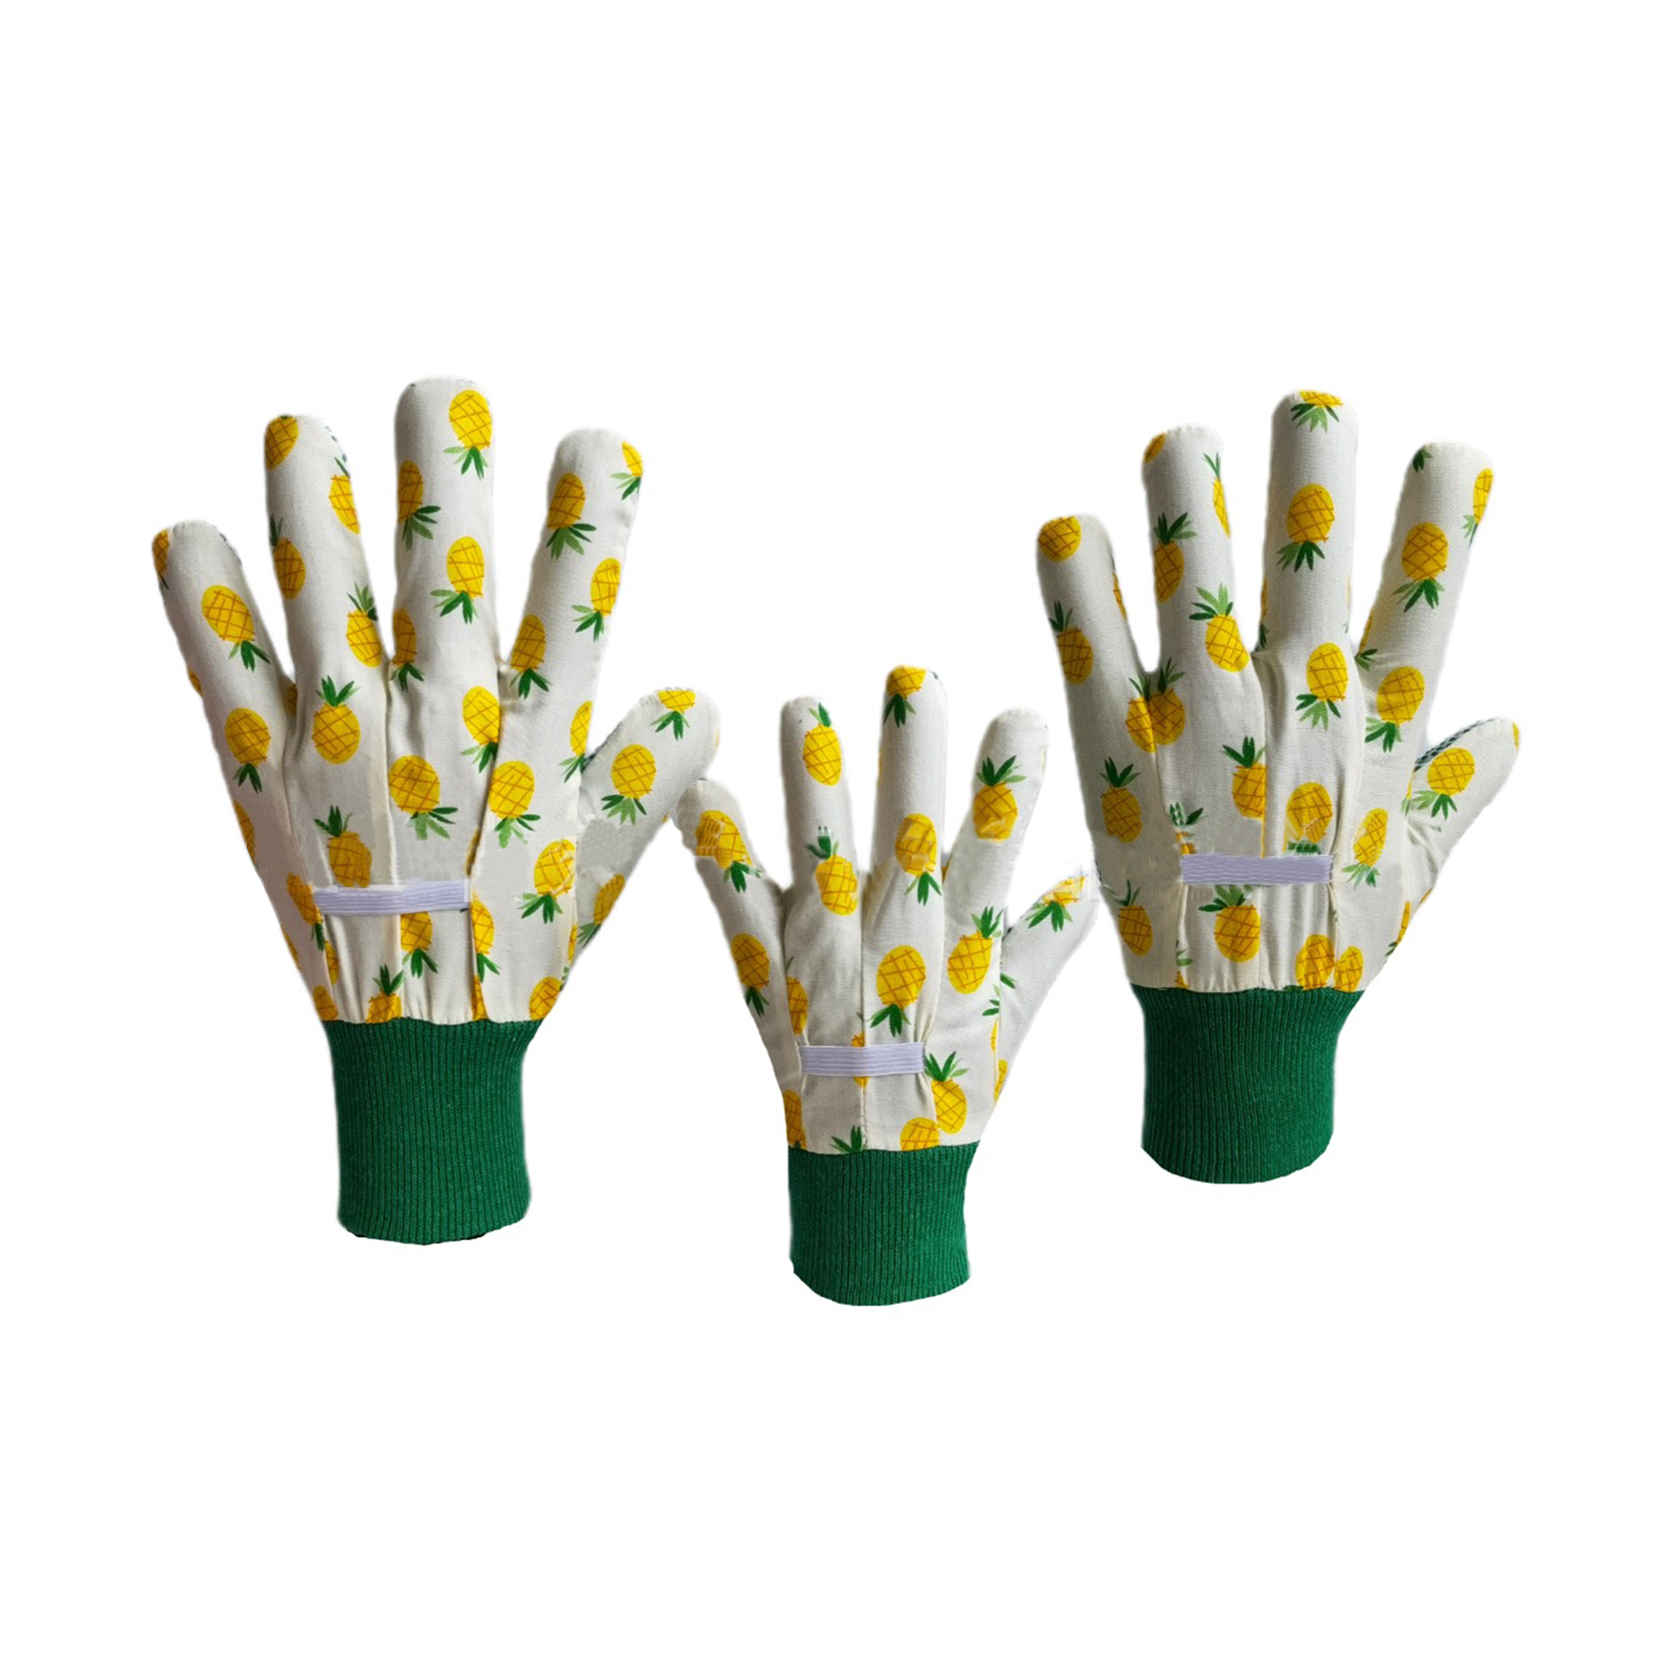 Günstige 100% Baumwolle Palm Garden Handschuhe PVC gepunktete Baumwolle Gartenhandschuhe Unisex